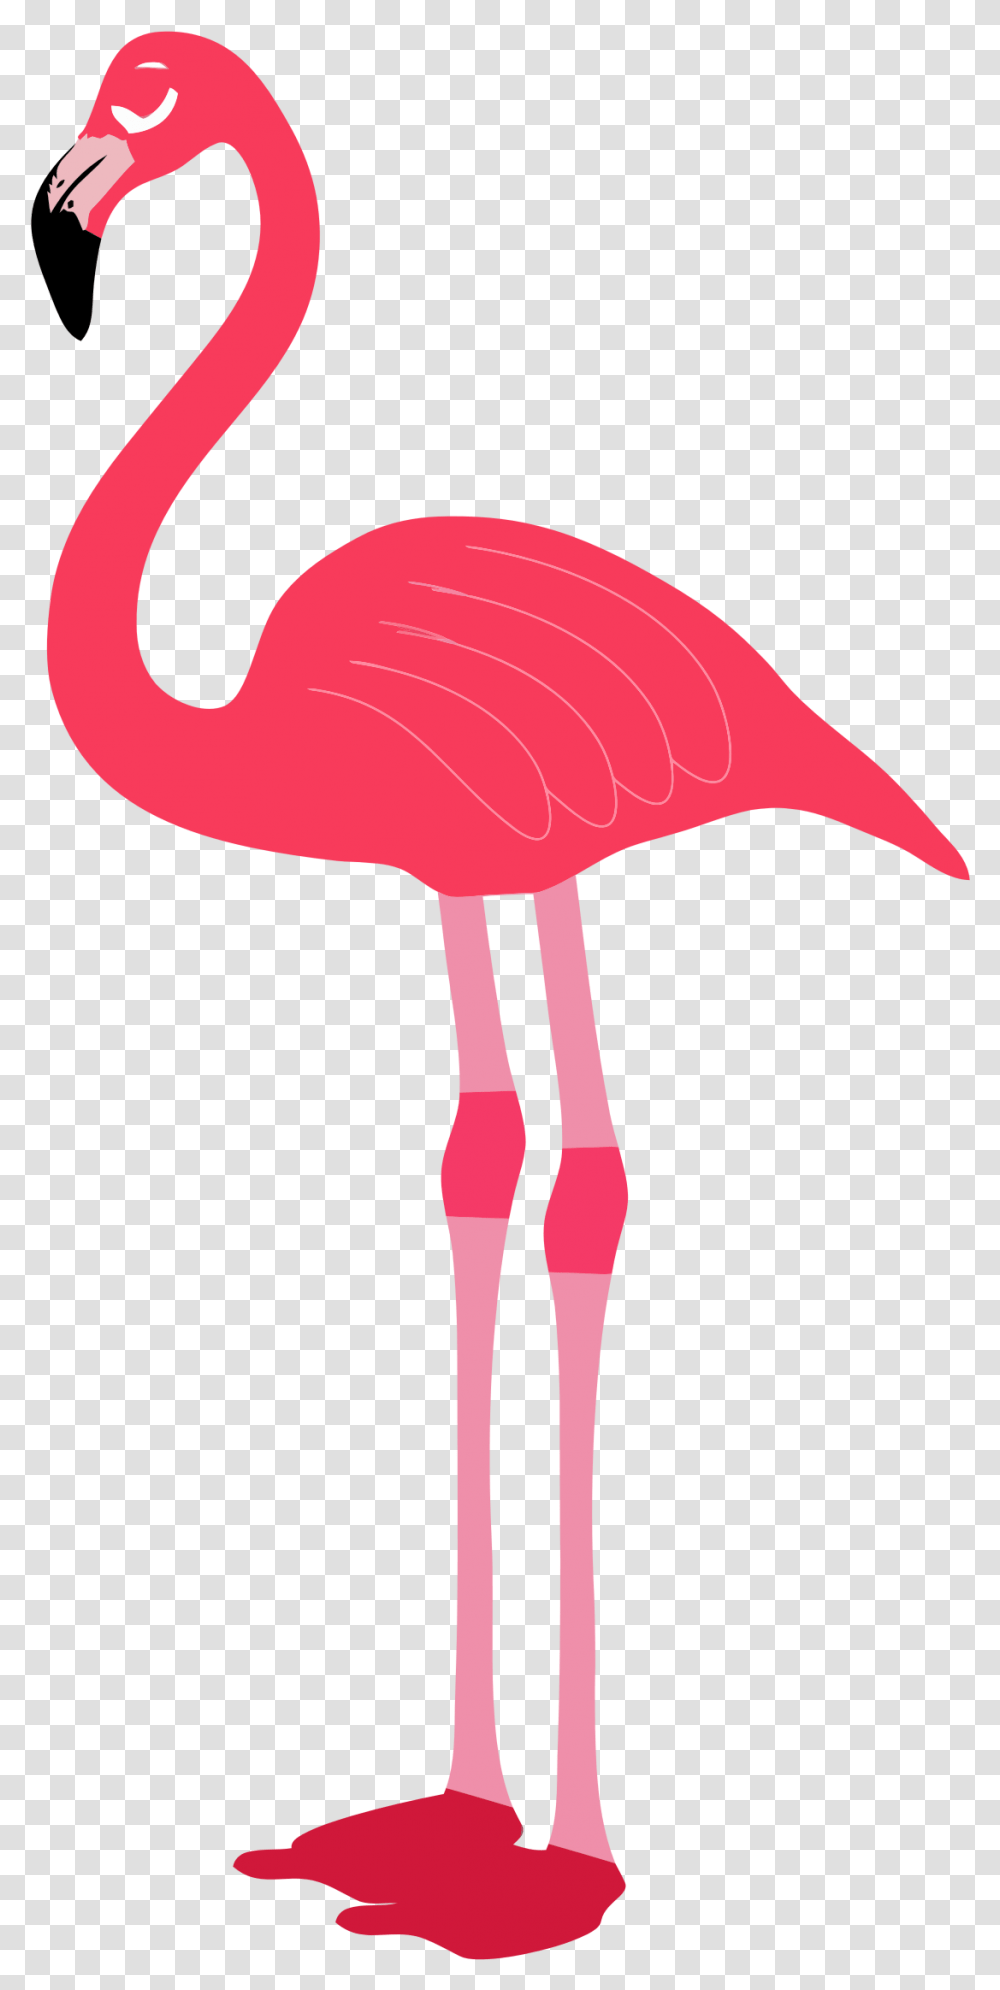 Flamingo Clipart Image Flamingo, Bird, Animal Transparent Png